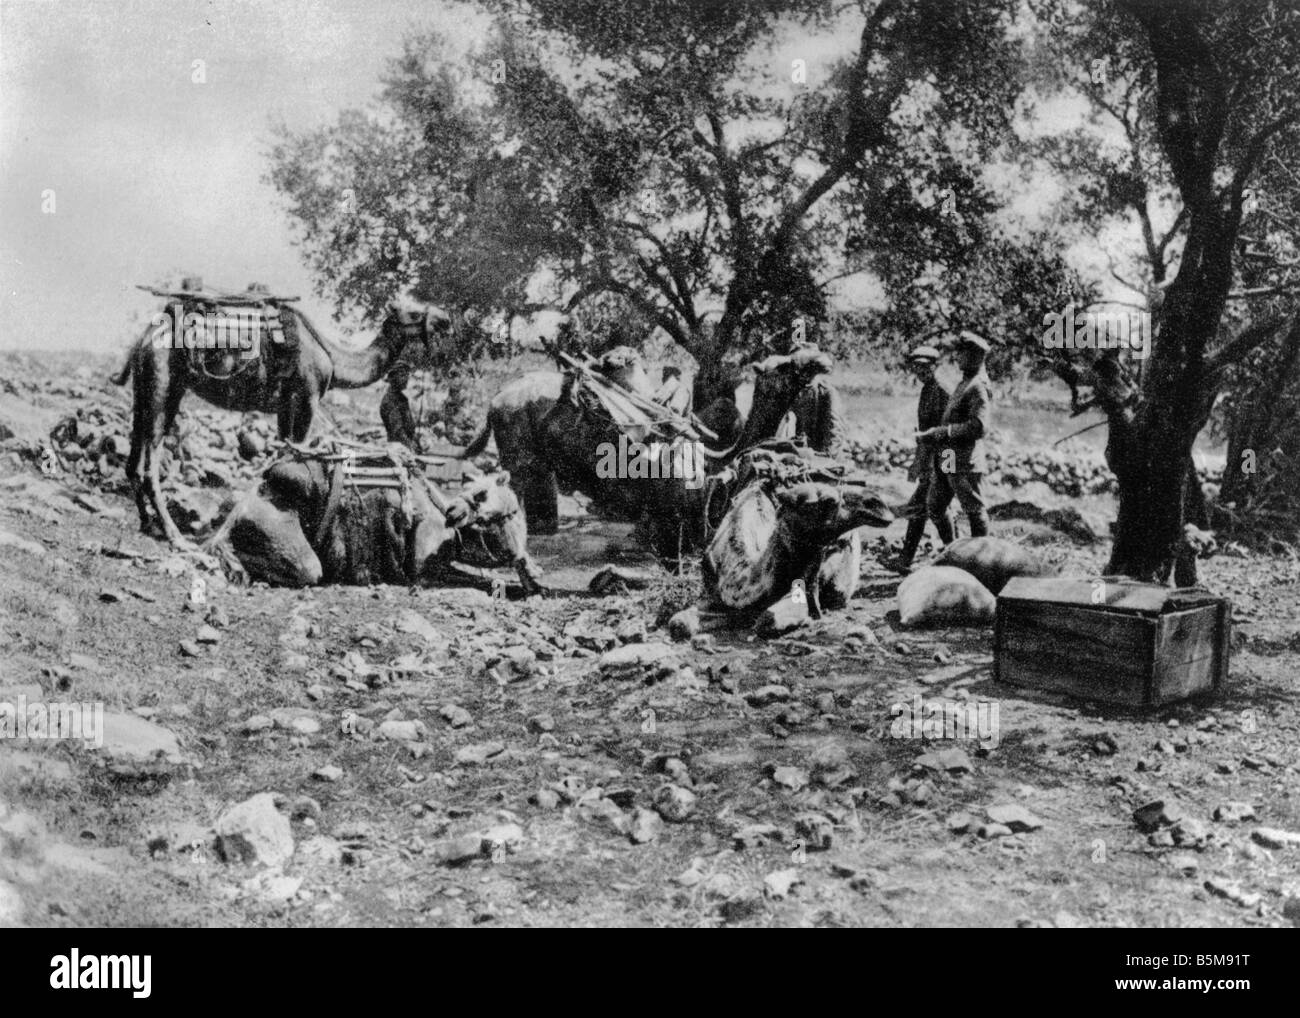 2 G55 N1 1915 1 Kamele deutschen Truppen Palästina 1915 Geschichte Weltkrieg Nahen Osten Deutschland und der Türkei kämpfen gemeinsam gegen En Stockfoto